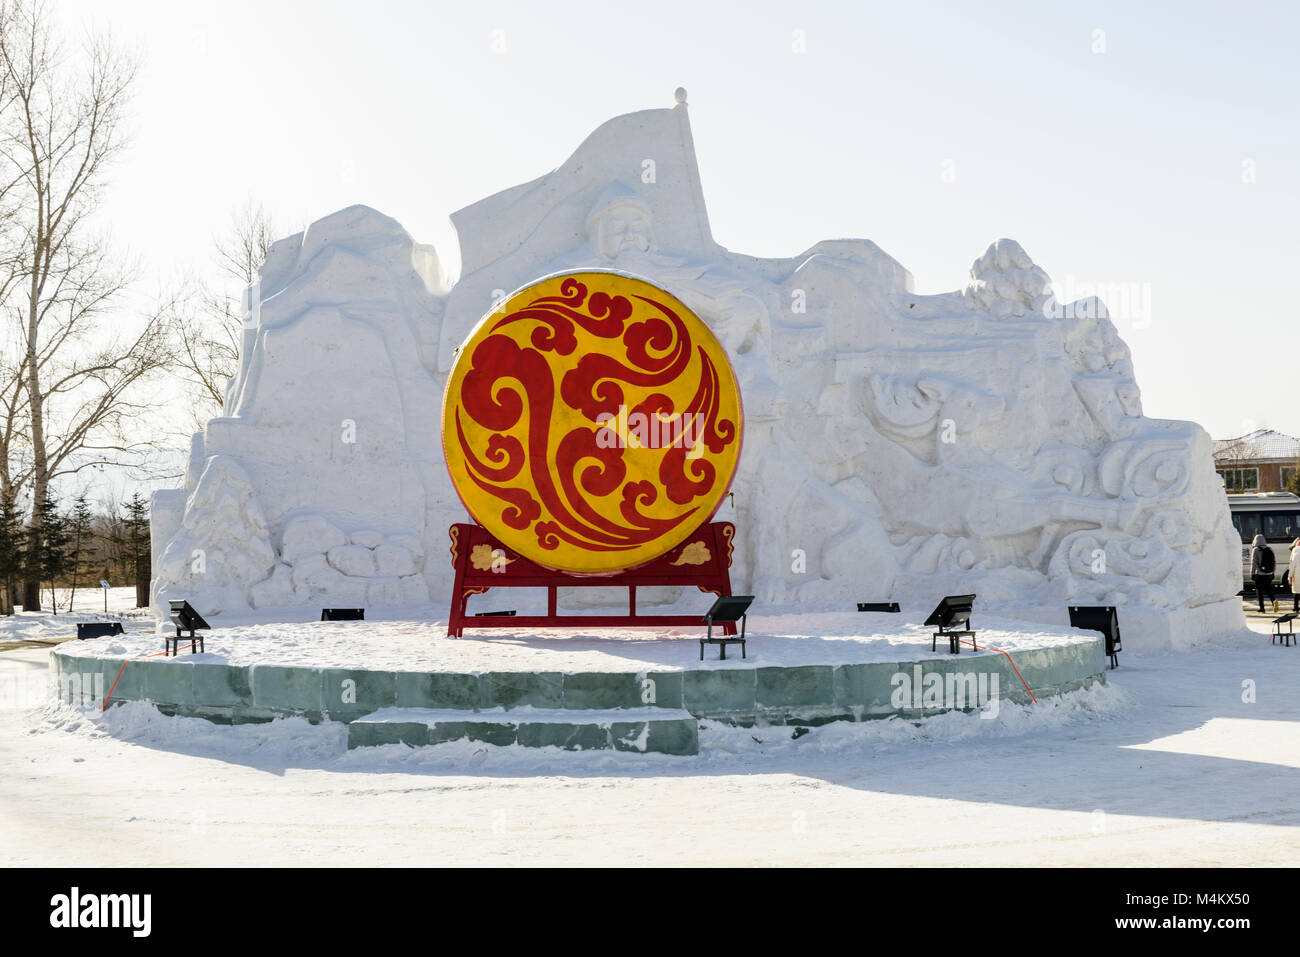 La entrada a la JIngpo Hu Geopark. Esta escultura de nieve depics un héroe de la guerra. Foto de stock